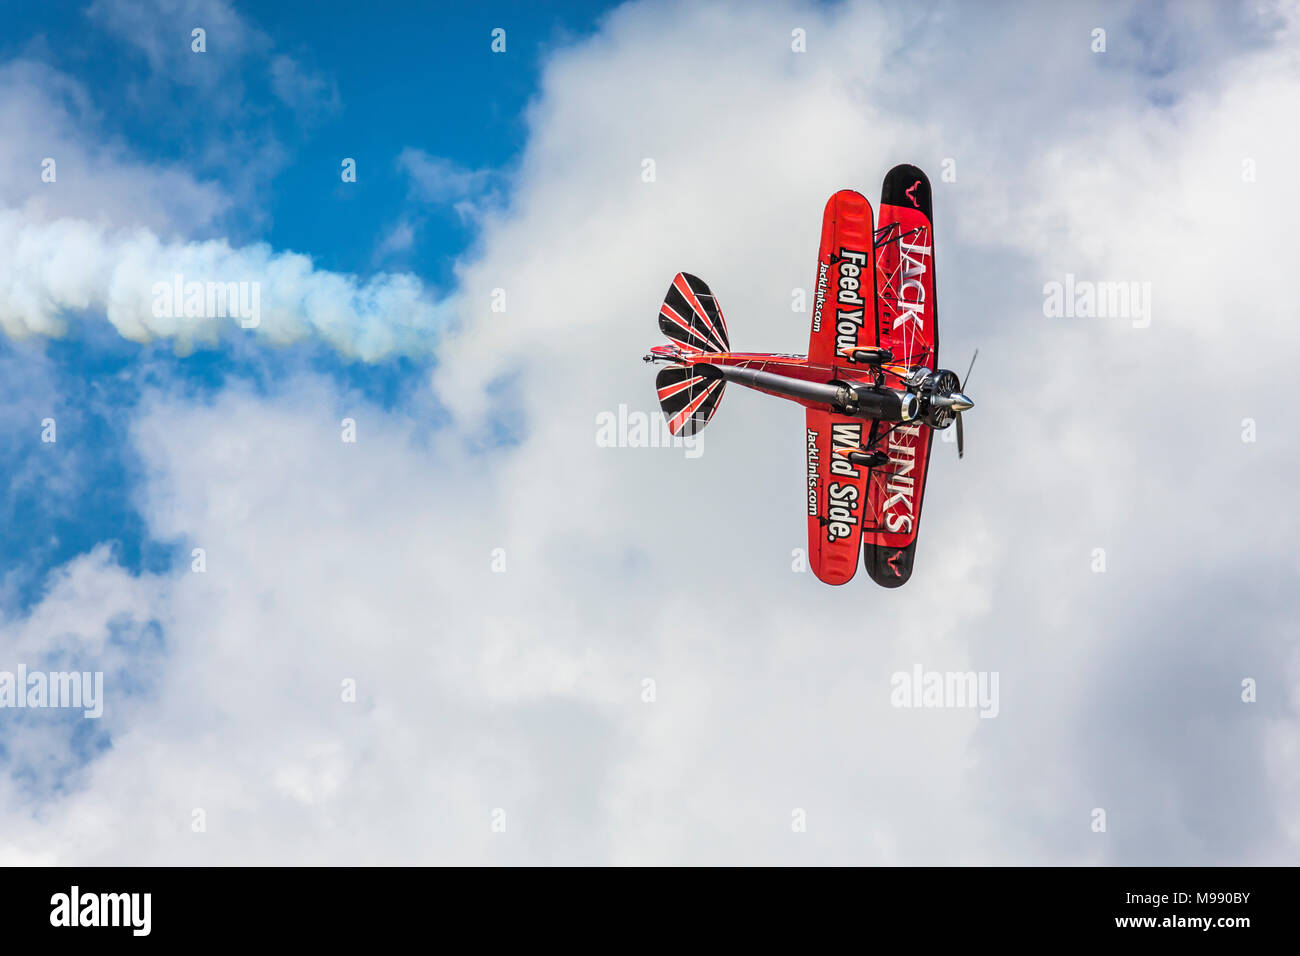 La toma de aire de Waco Enlaces acrobat en vuelo en el 2017 Airshow en Duluth, Minnesota, USA. Foto de stock